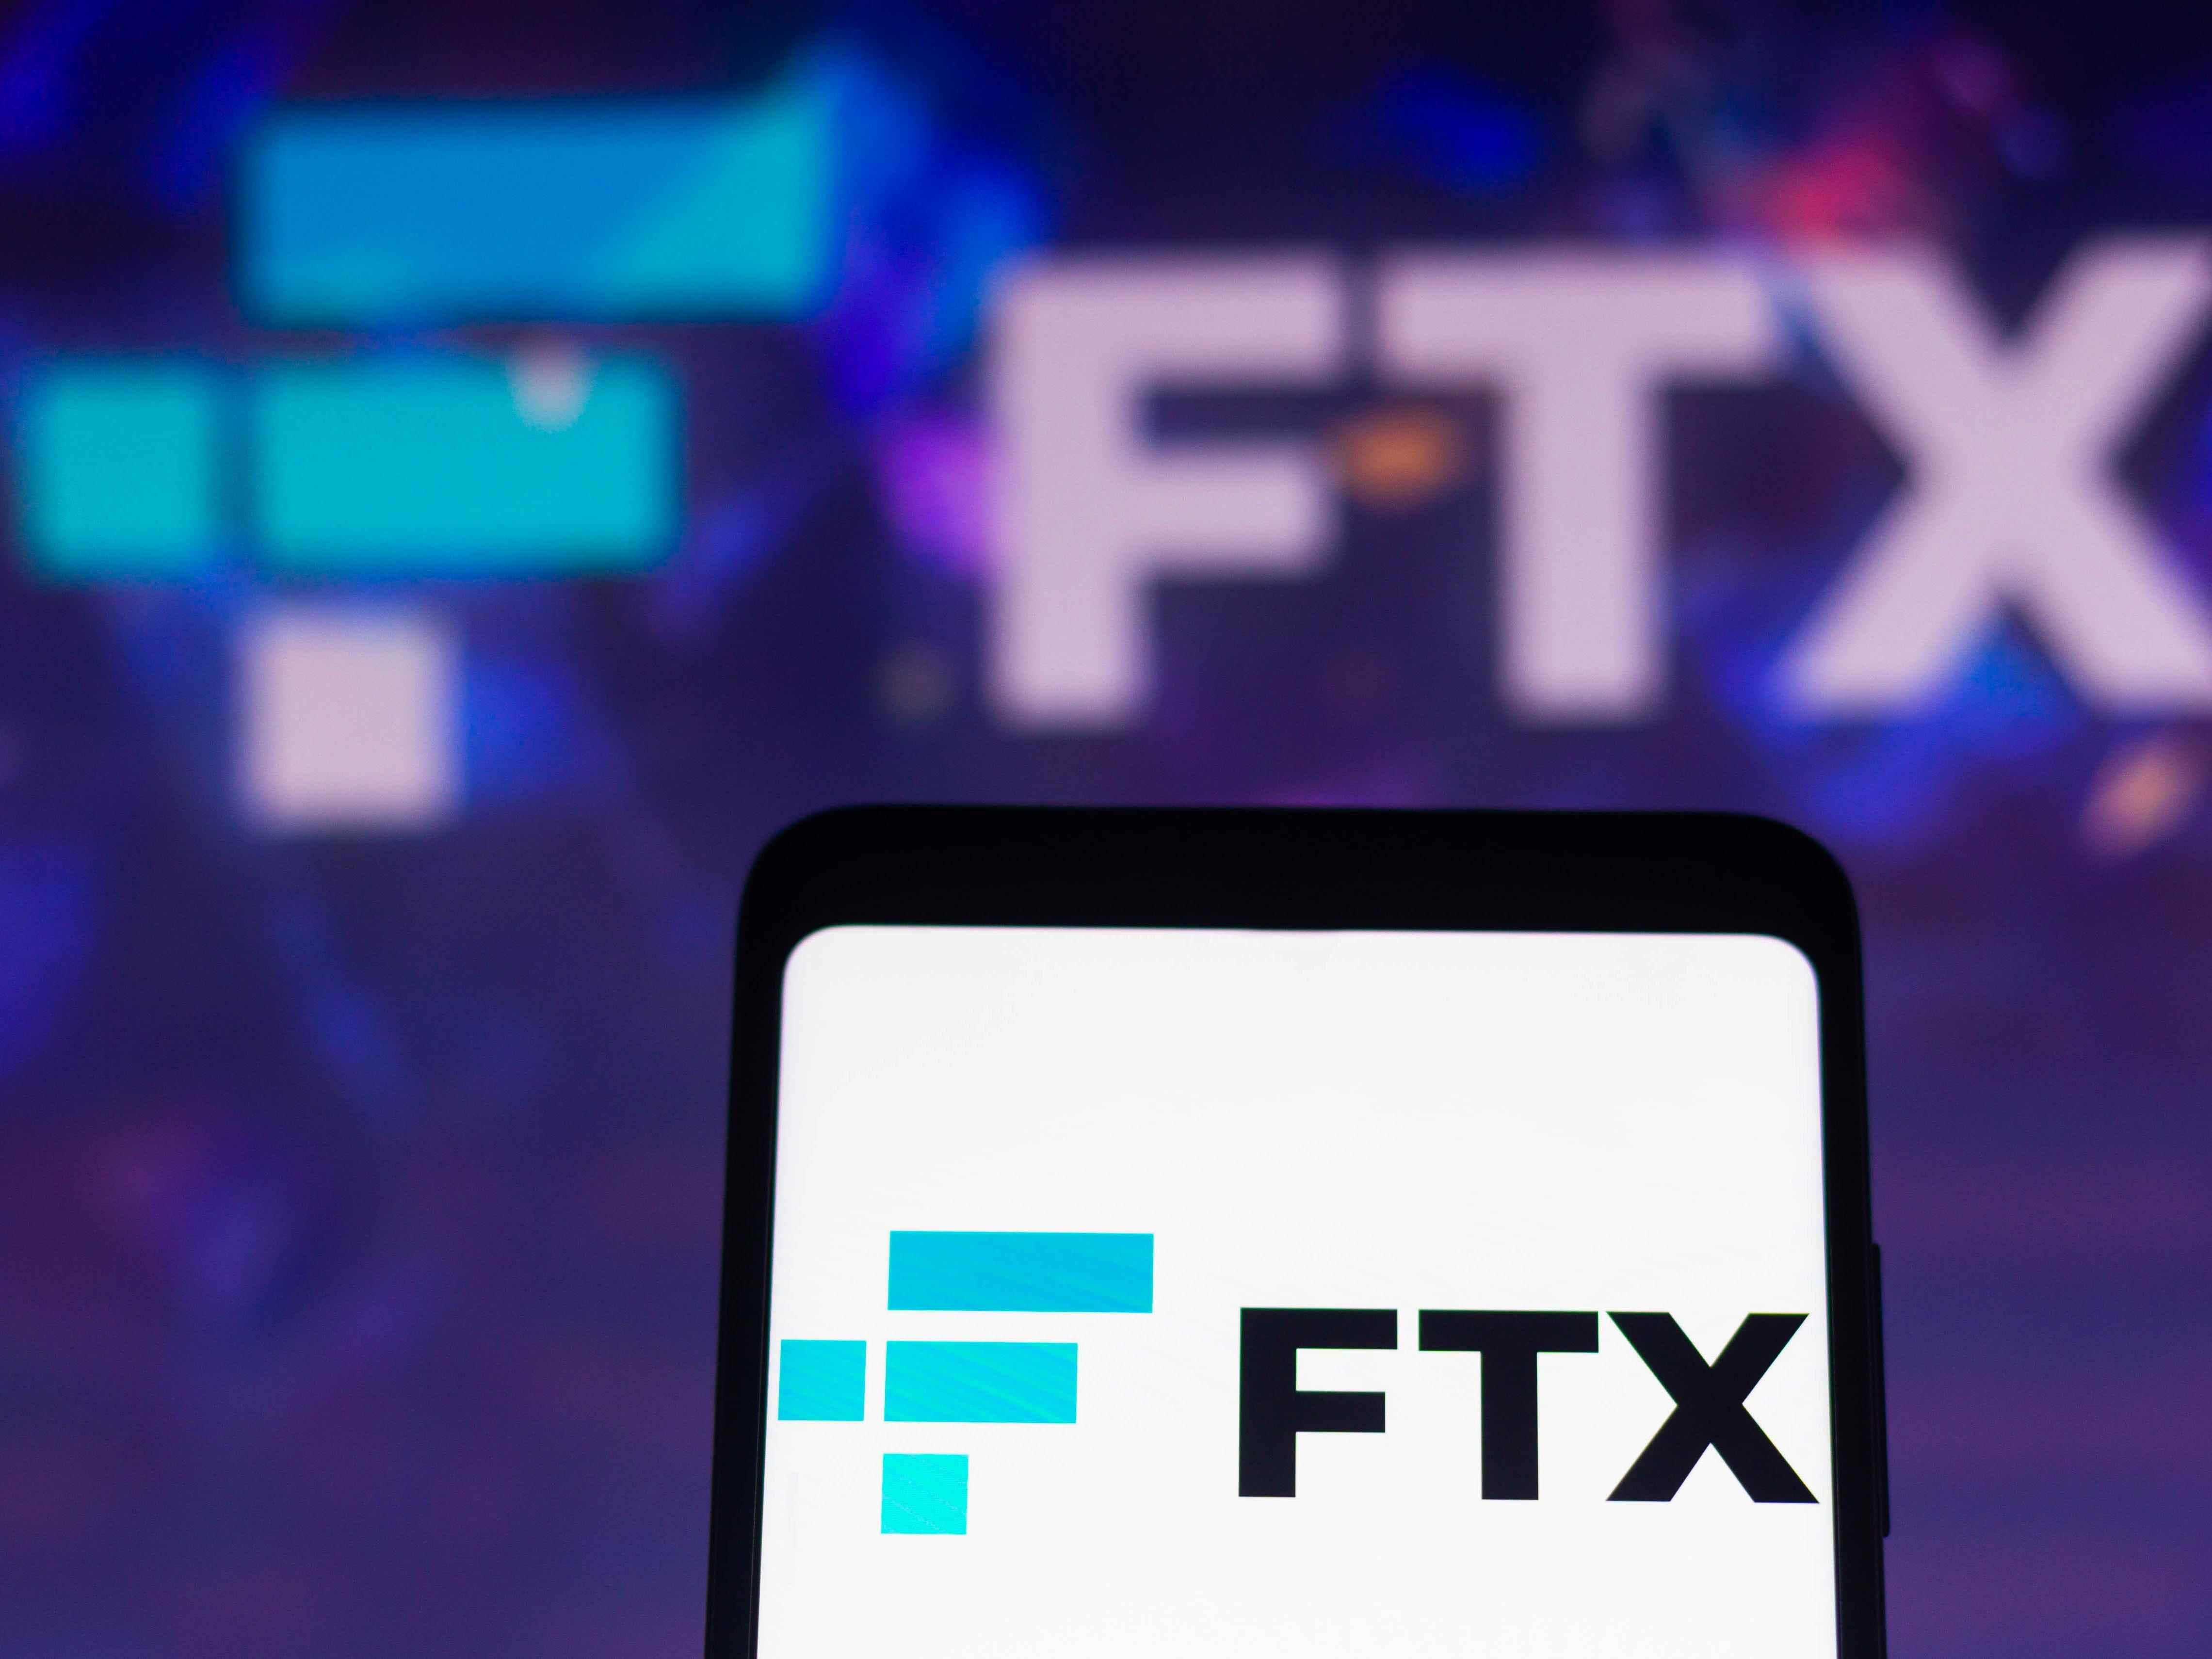 In dieser Abbildung wird das Logo der FTX Crypto Derivatives Exchange auf einem Smartphone-Bildschirm und im Hintergrund angezeigt.